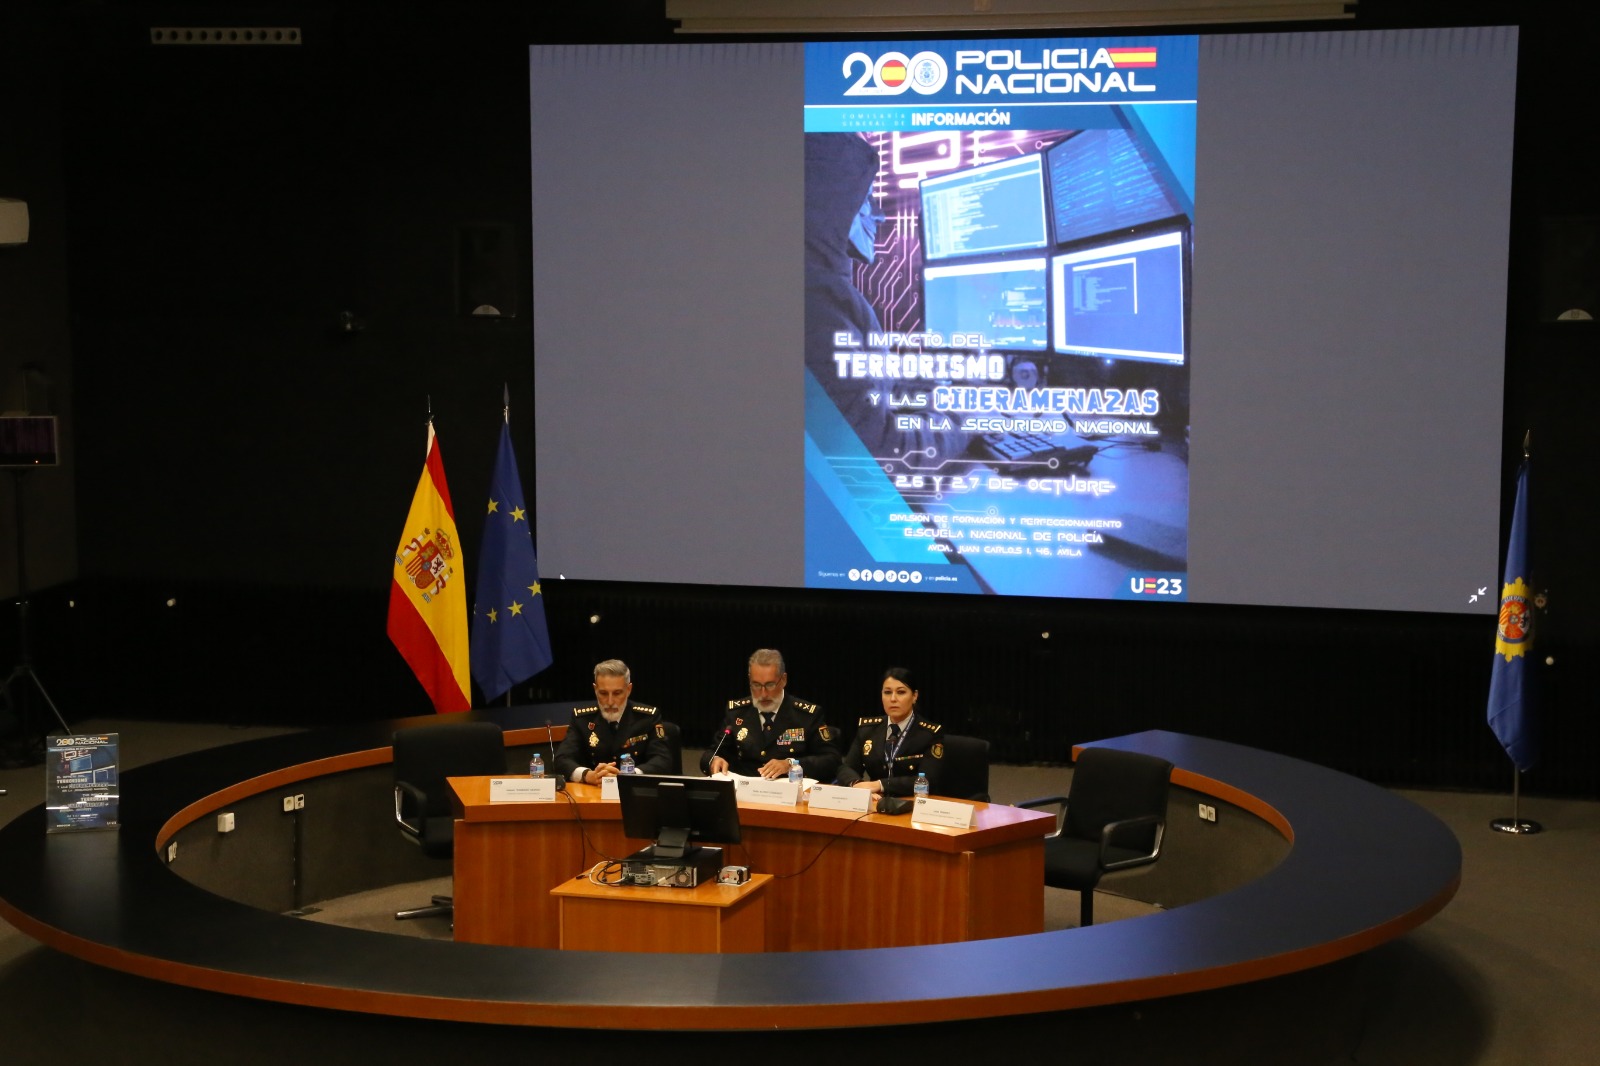 La Policía Nacional organiza un Seminario sobre “El impacto del terrorismo y las ciberamenazas en la Seguridad Nacional”